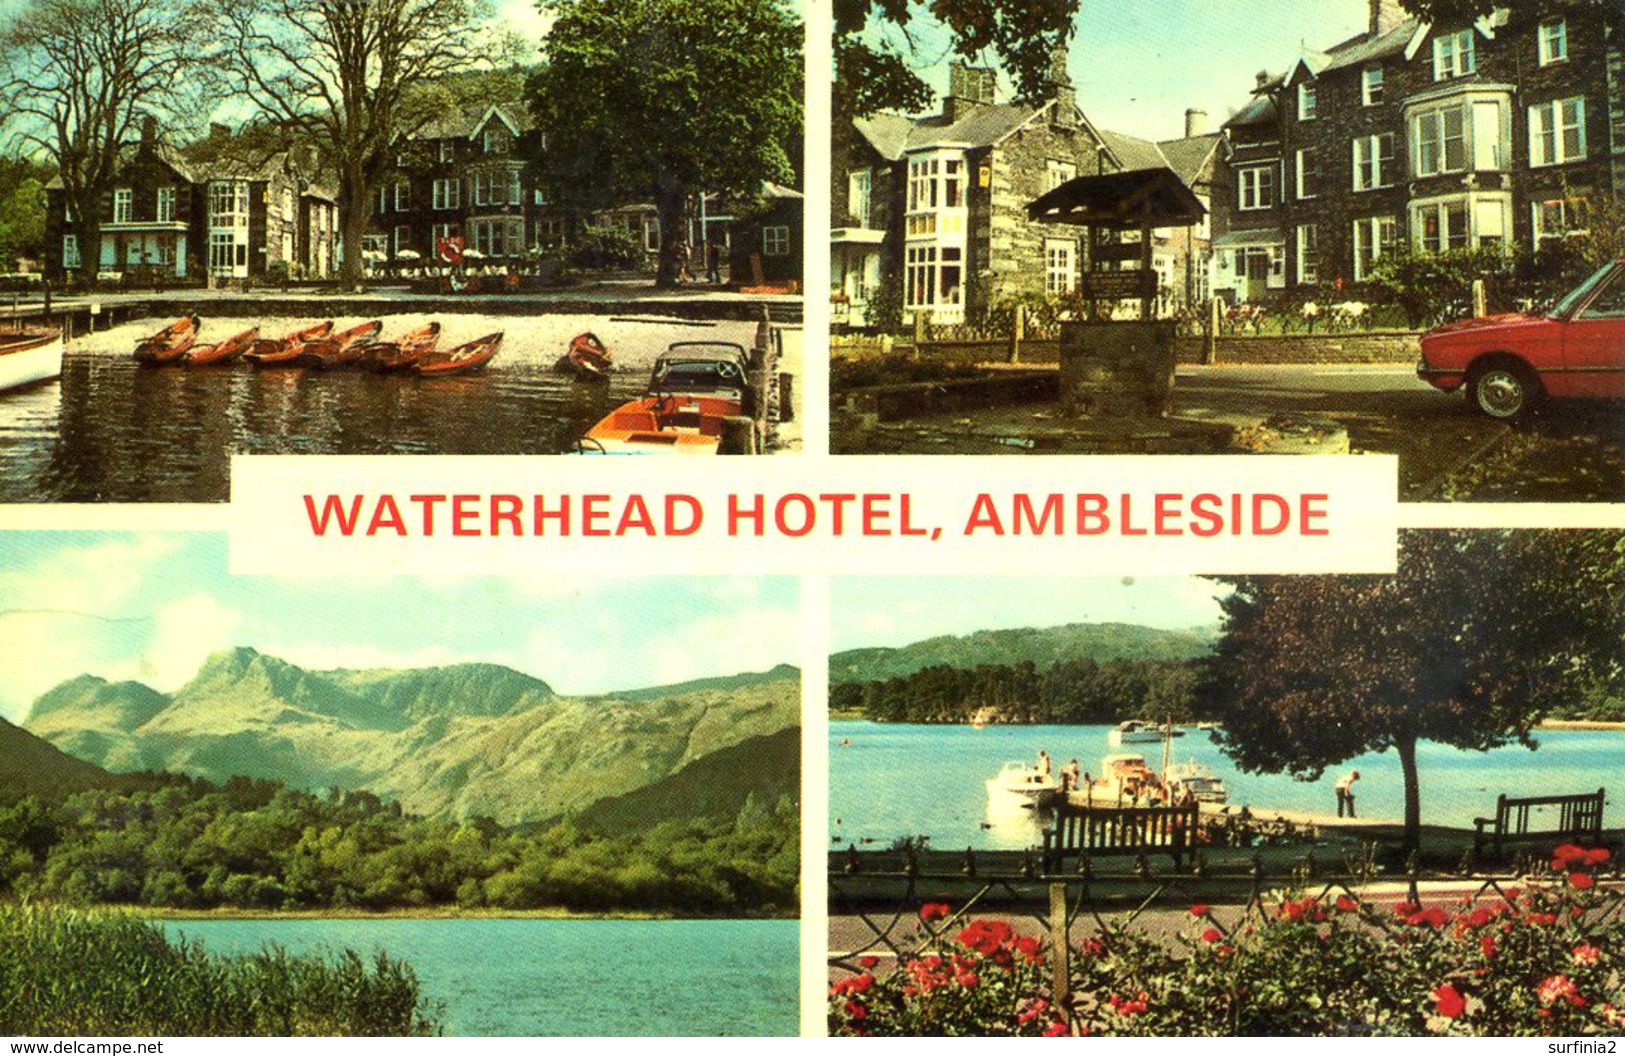 CUMBRIA - AMBLESIDE - WATERHEAD HOTEL - 2 DIFFERENT CARDS  Cu1153/54 - Ambleside